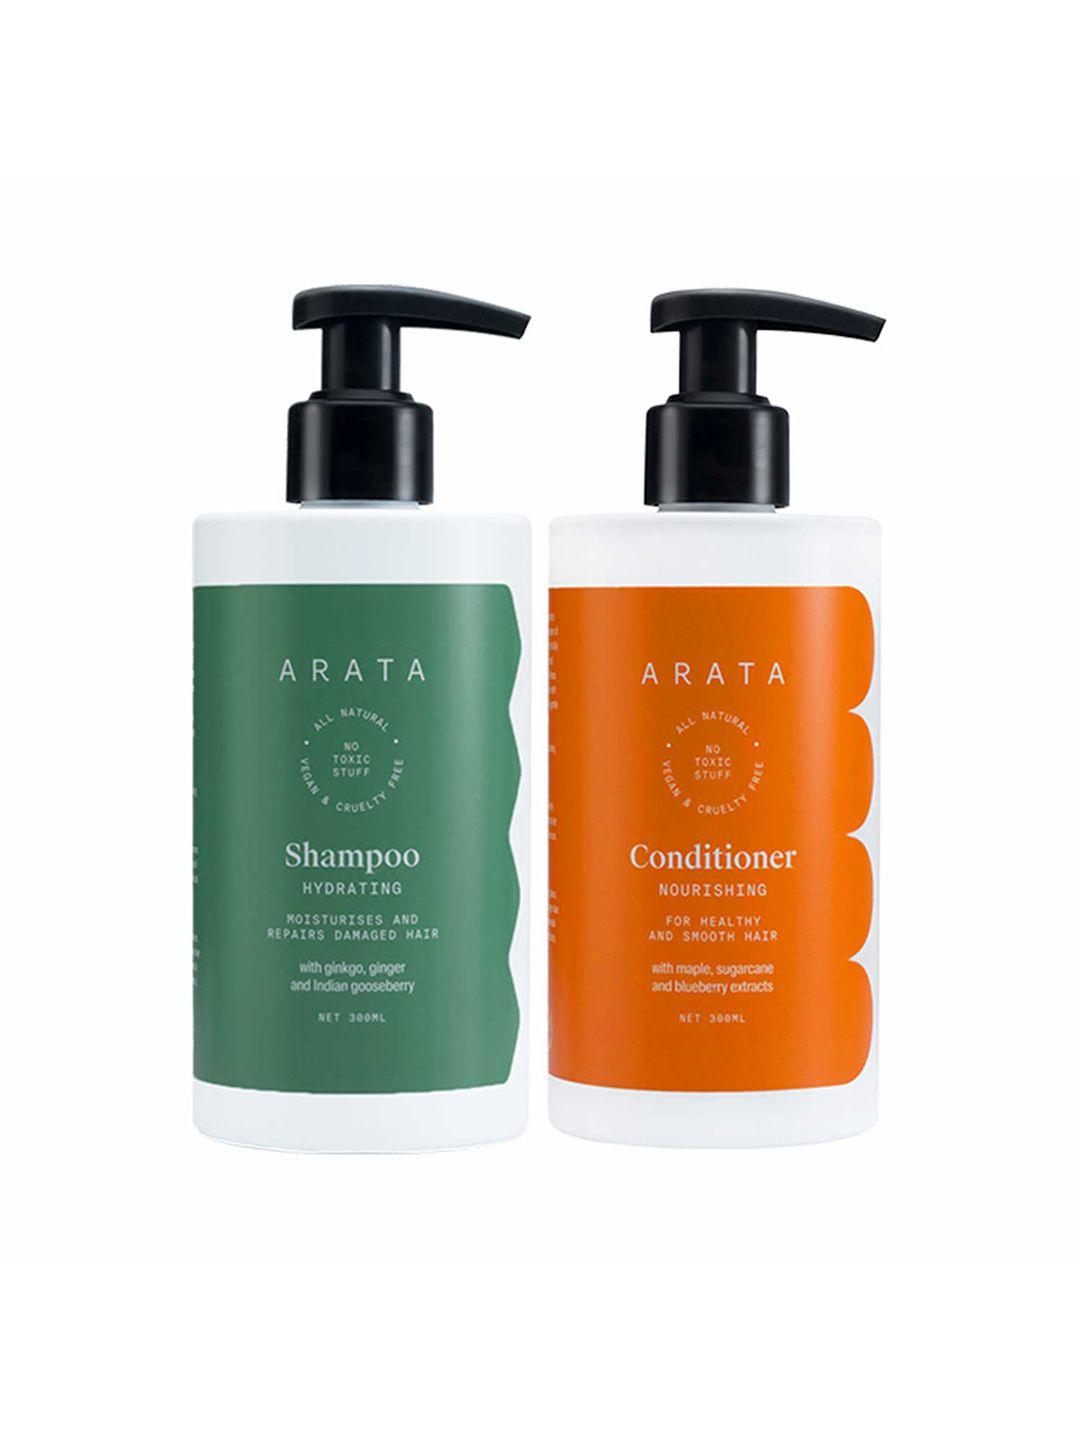 arata natural damage repair shampoo & conditioner - 300ml each